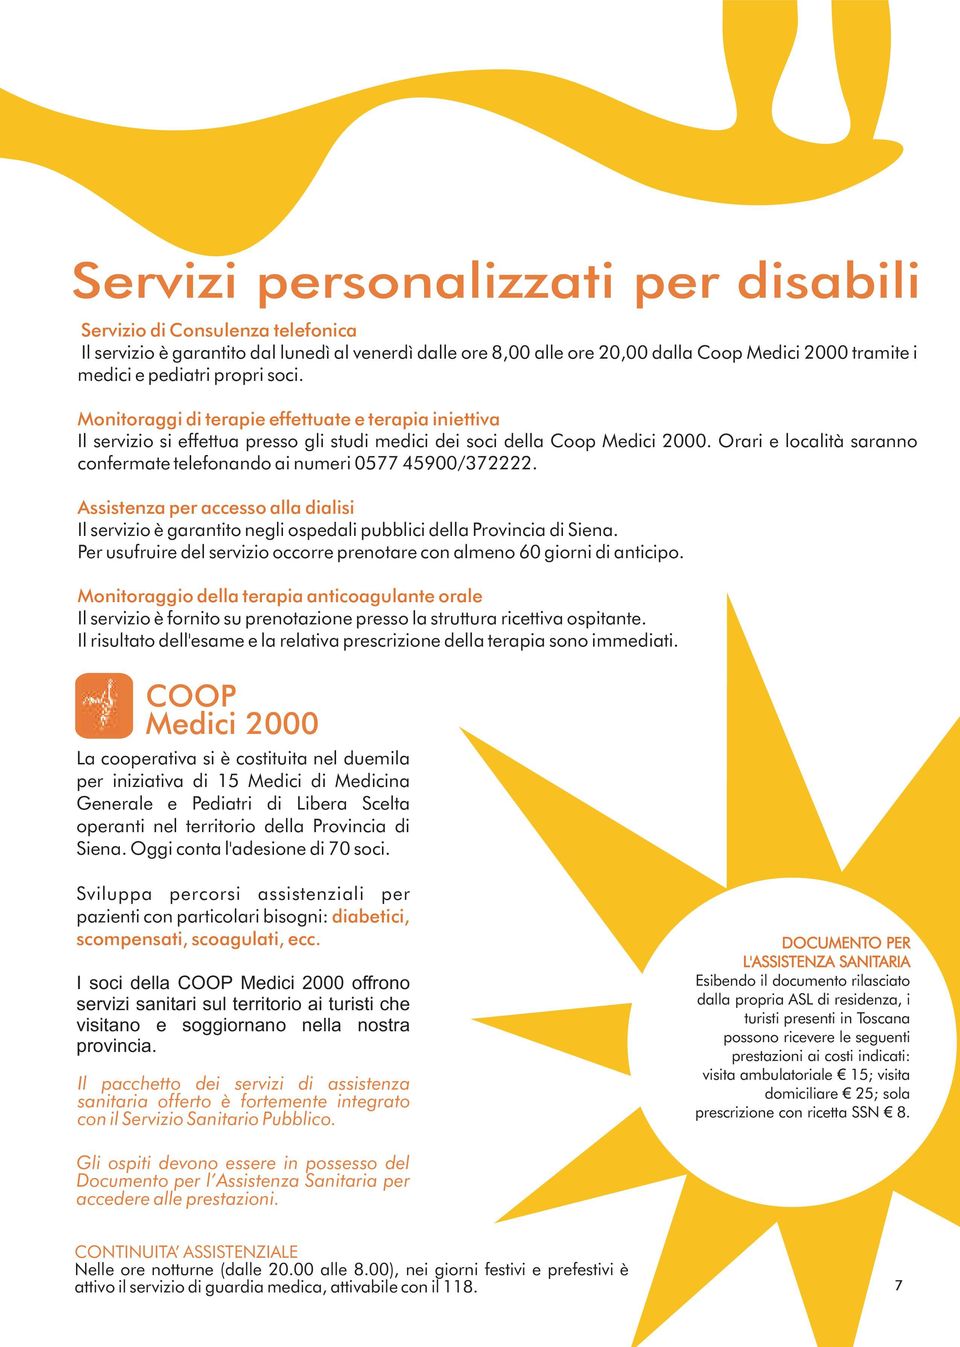 Orari e località saranno confermate telefonando ai numeri 0577 45900/372222. Assistenza per accesso alla dialisi Il servizio è garantito negli ospedali pubblici della Provincia di Siena.